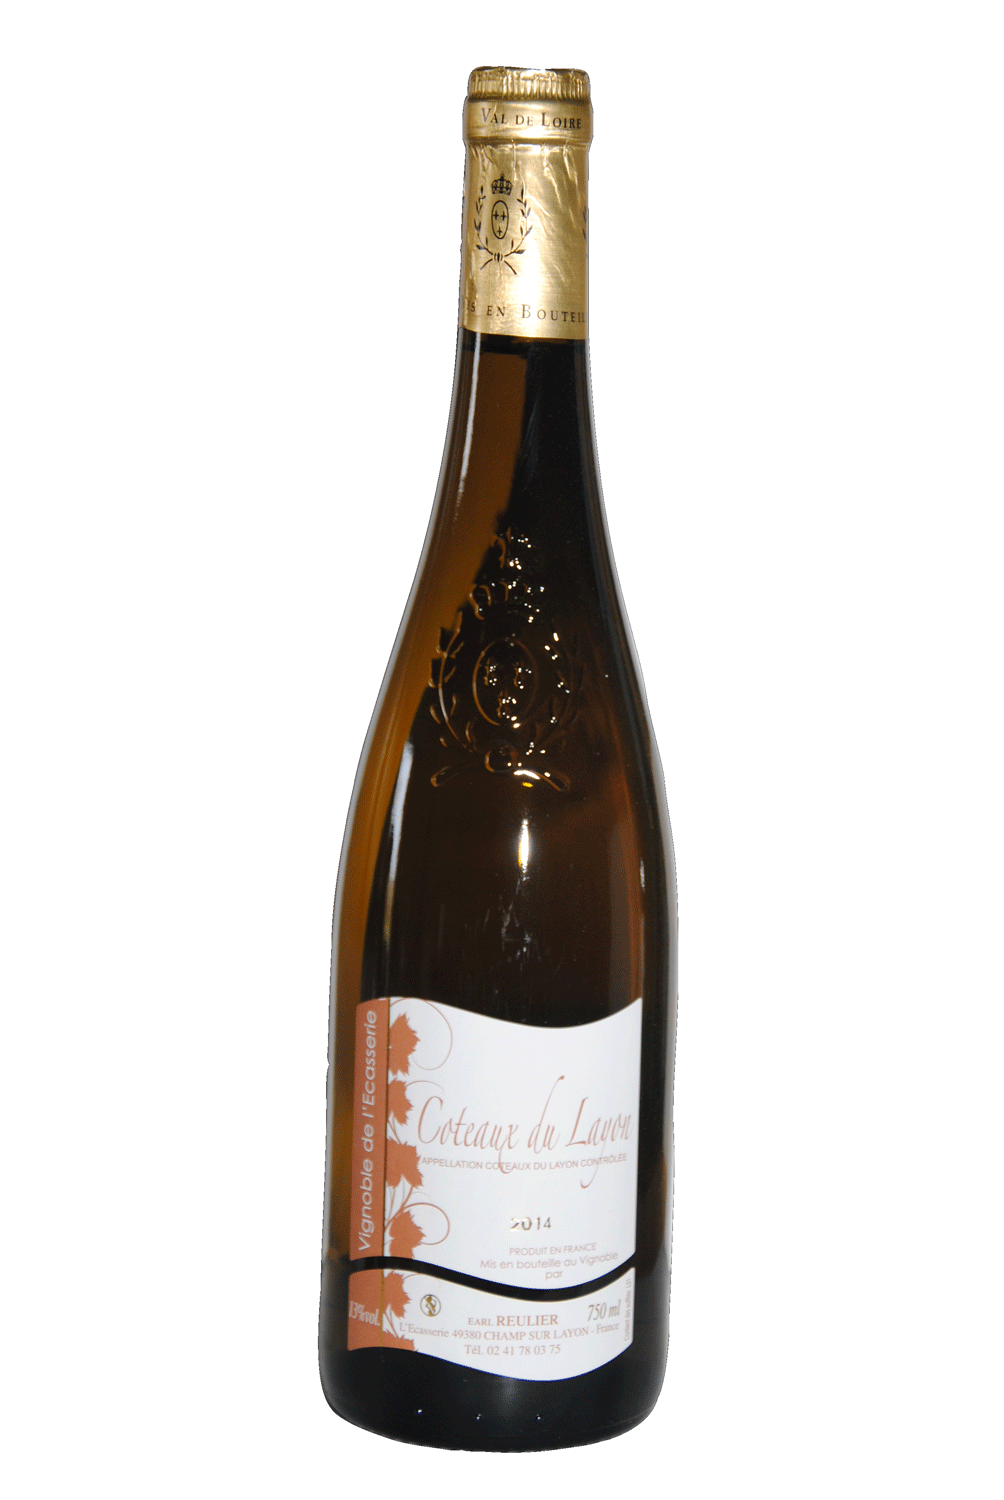 Coteaux du Layon, Vignoble de l'ecasserie, EARL REULIER